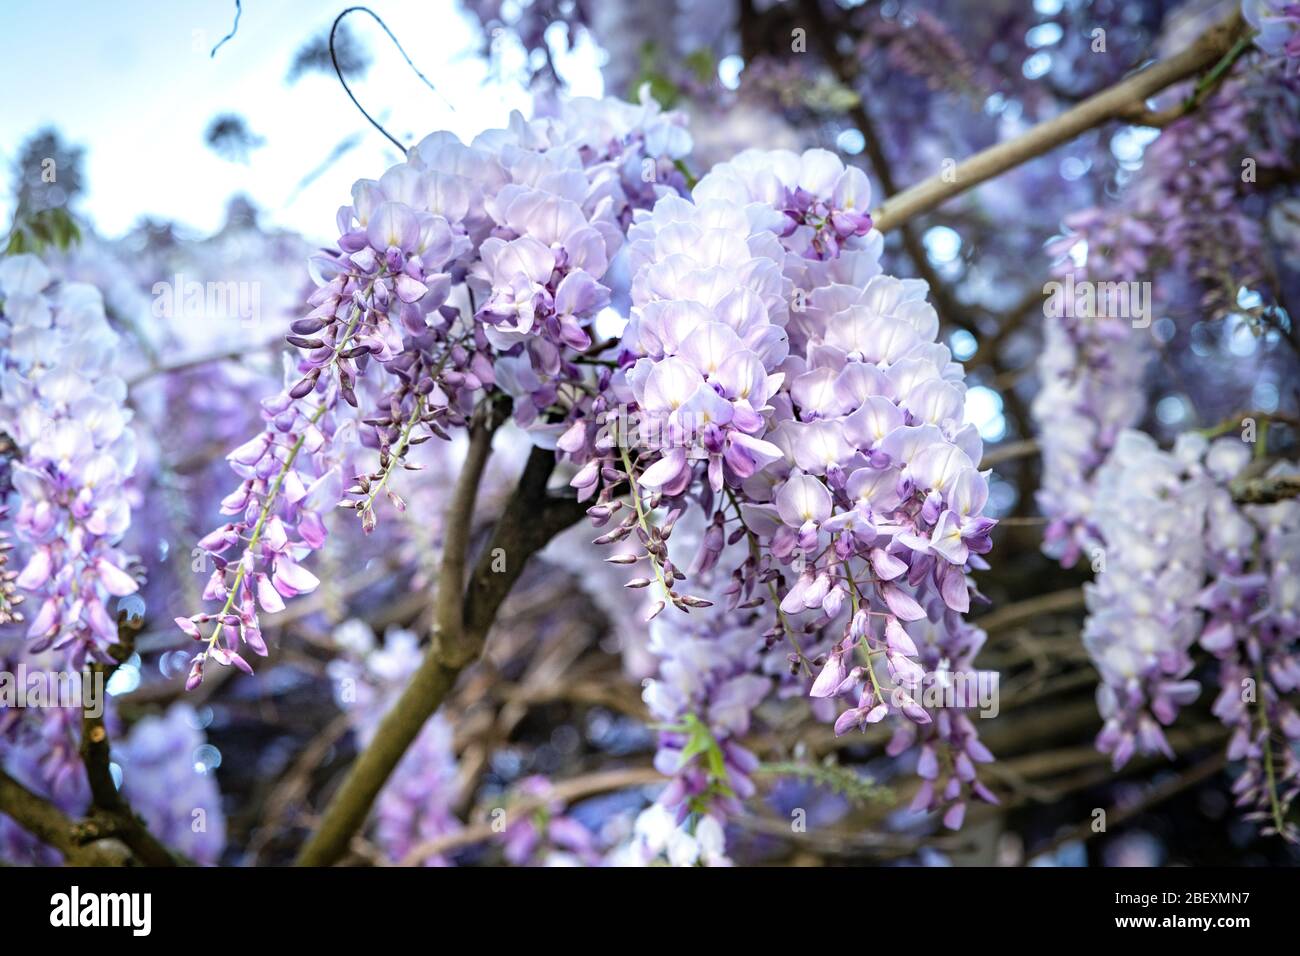 Pluie bleue Wisteria fleurs. Wisteria Floribunda Macrobotrys fleurit. Banque D'Images